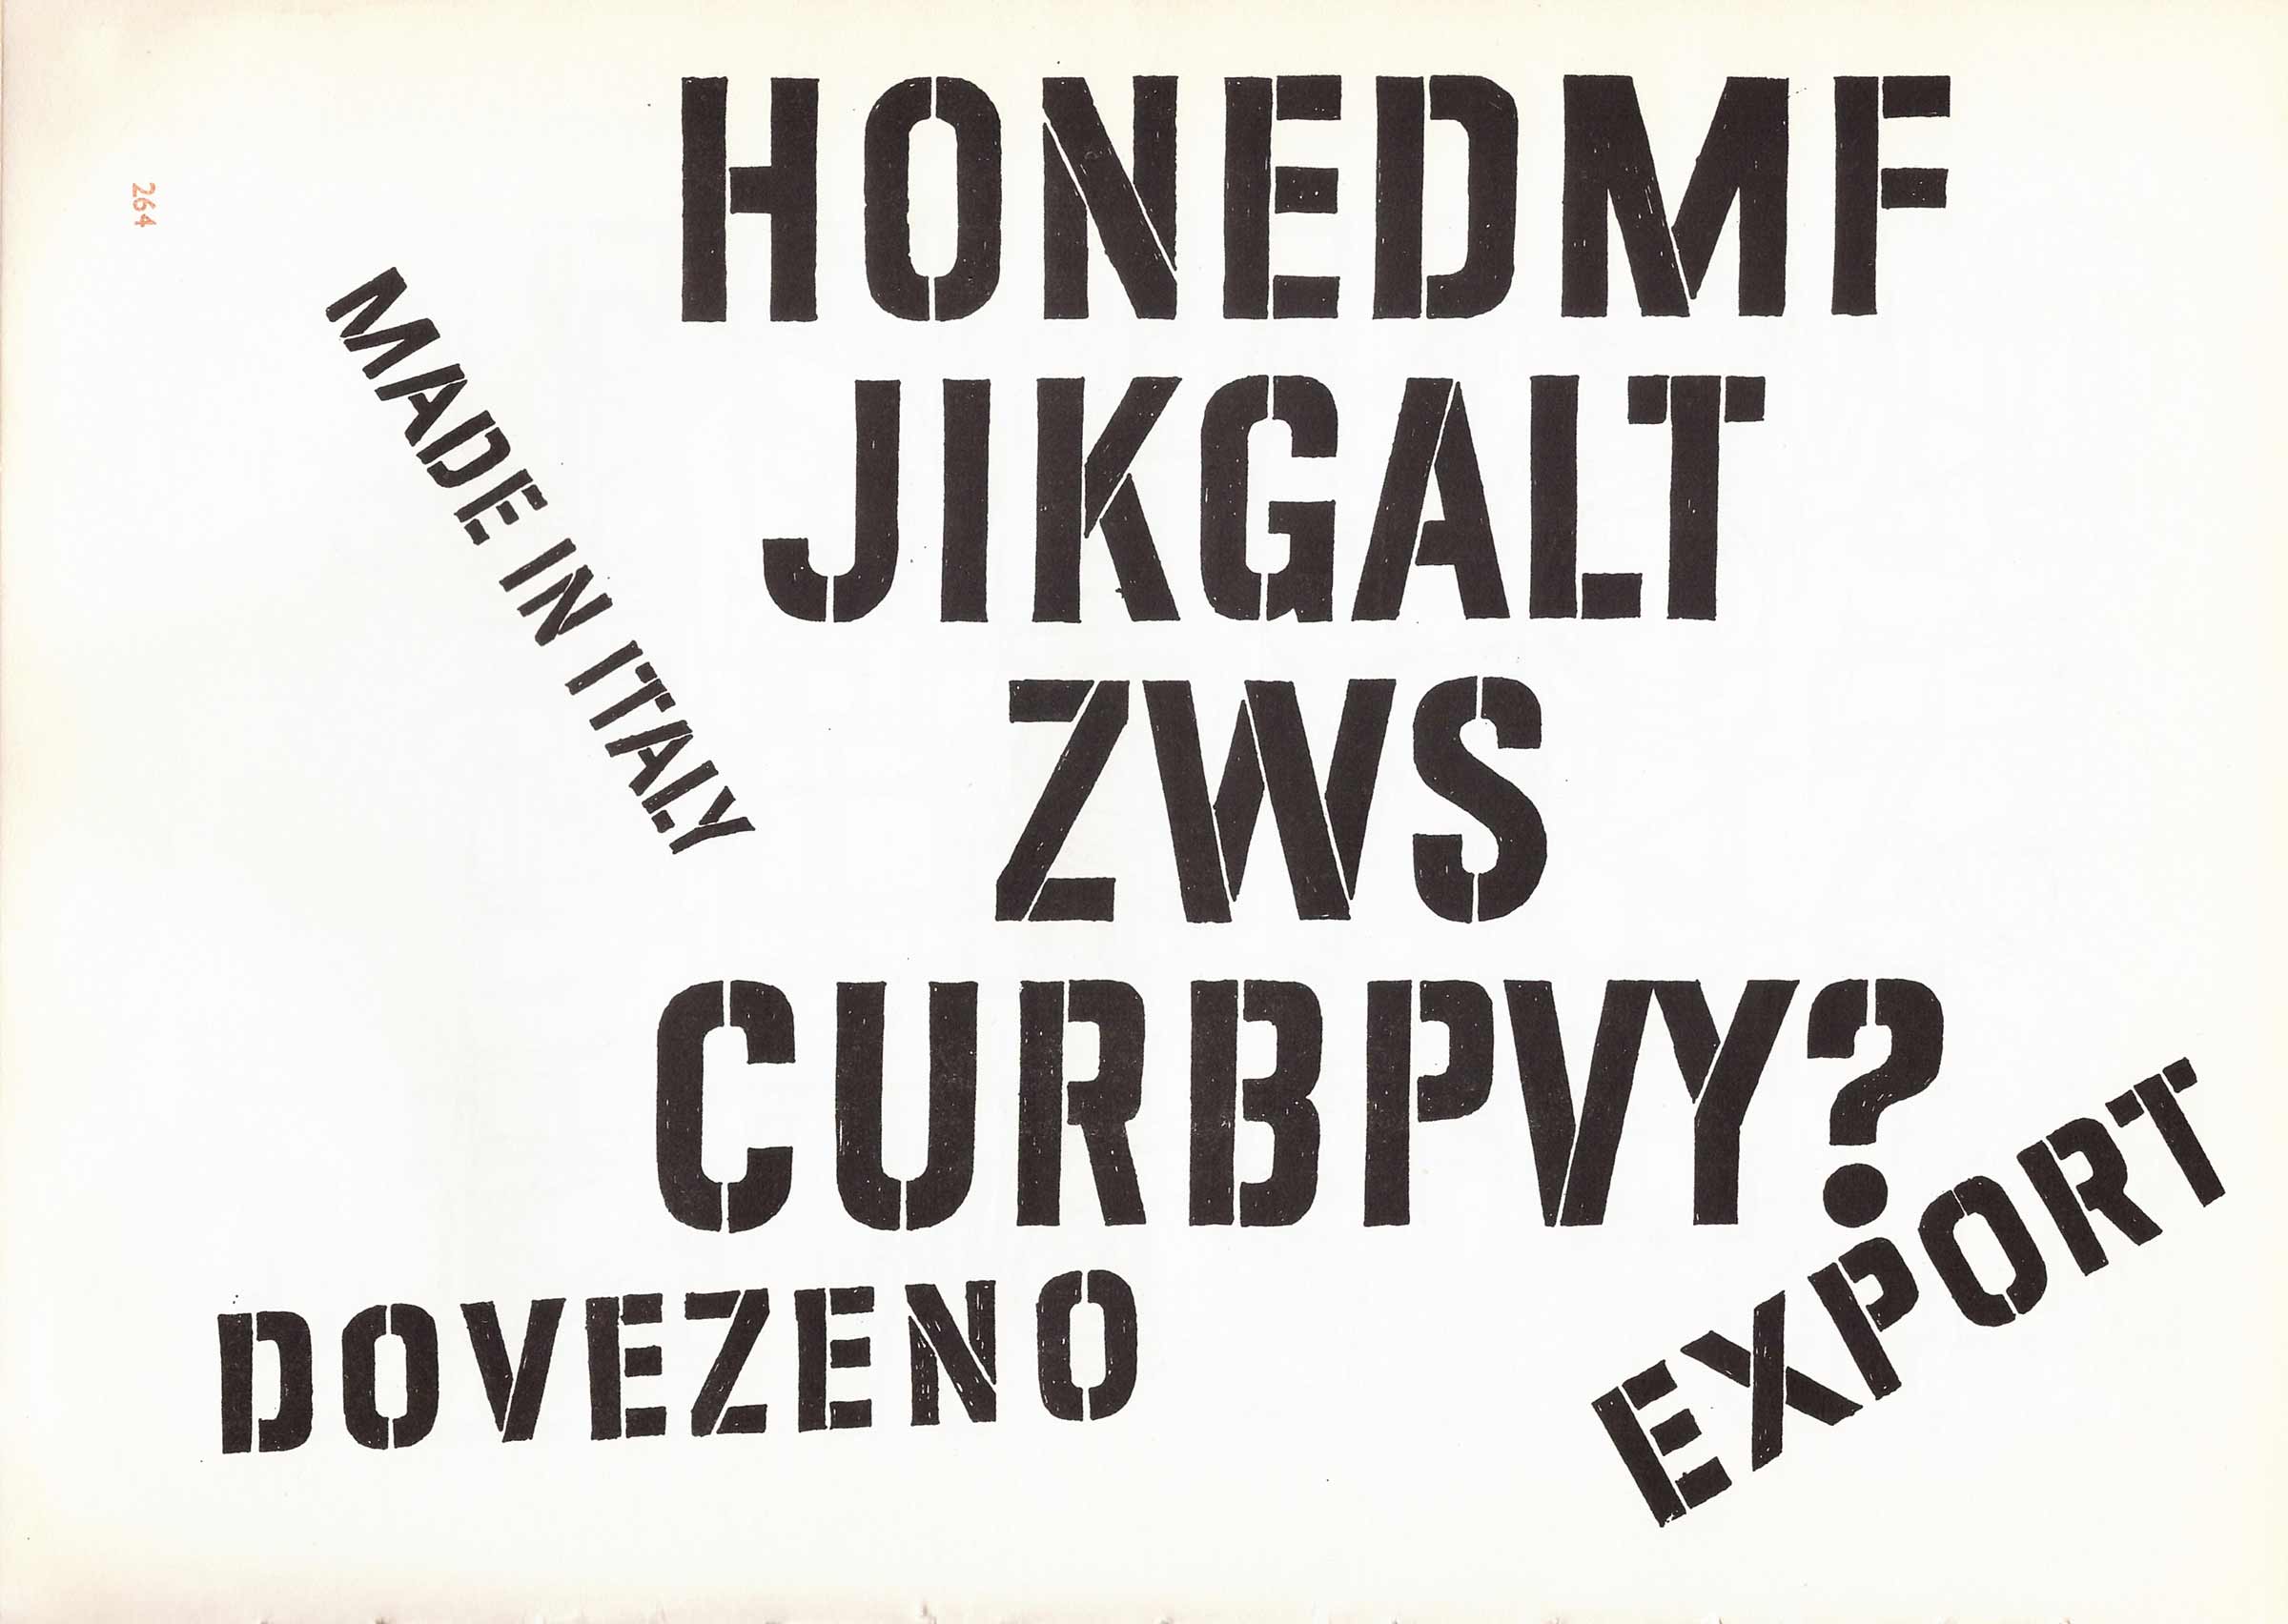 Bohumil Lanz, Zdeněk Němeček – Písmo v propagaci. Merkur, Praha, 1974.
https://manual.setuptype.com/